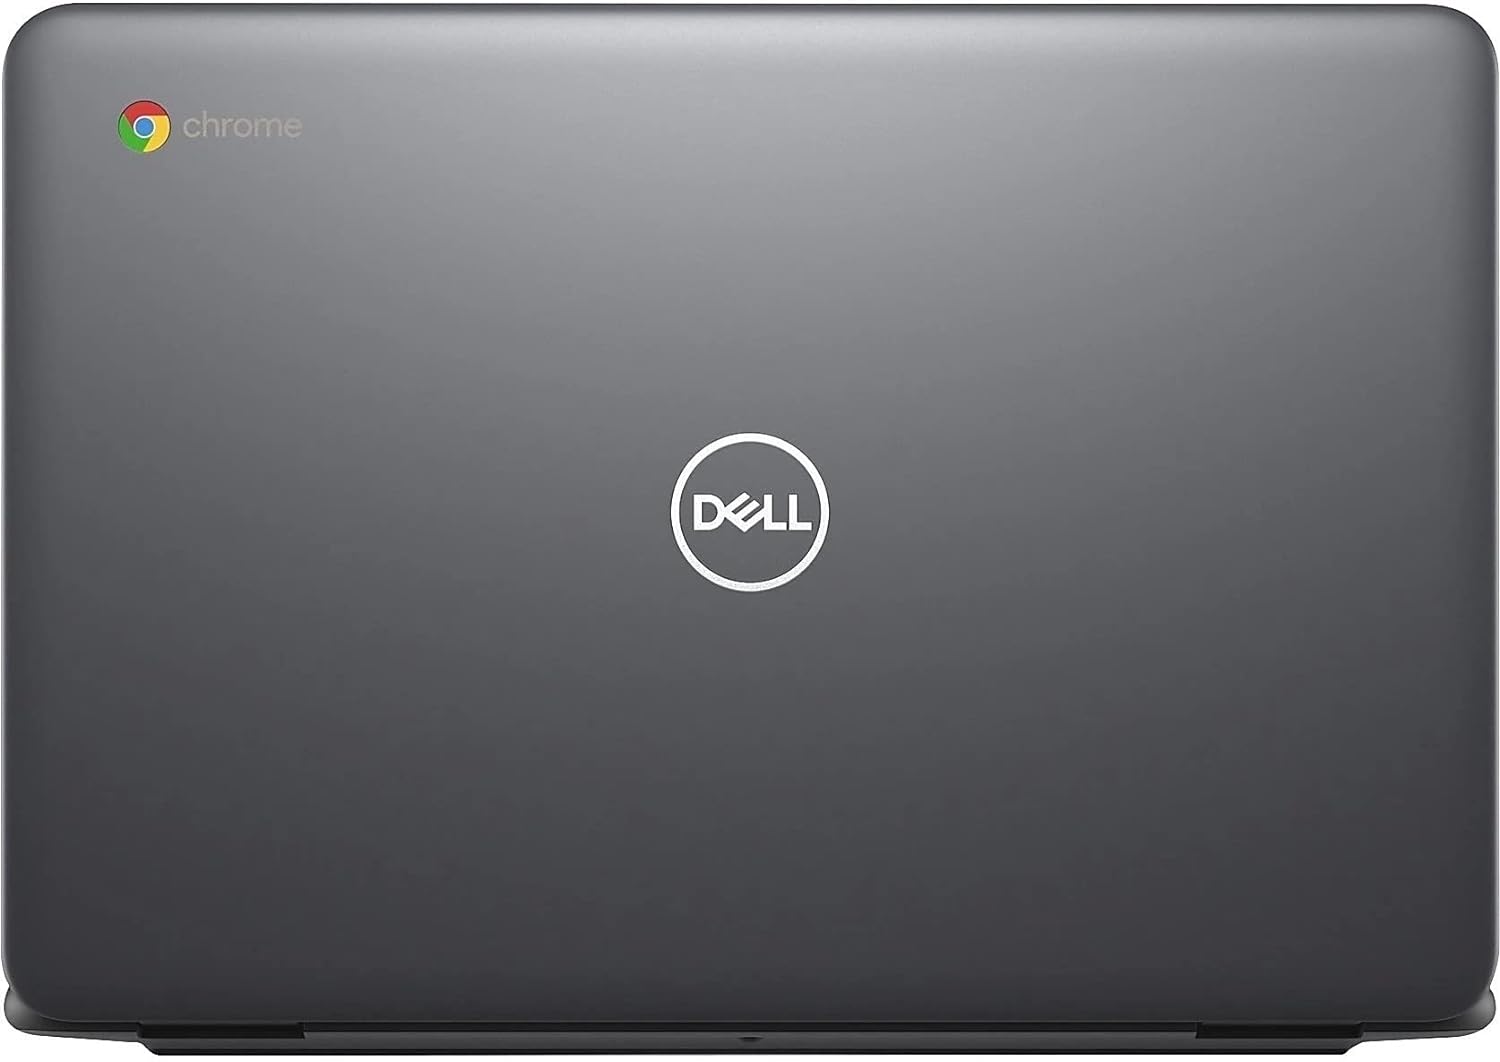 Dell 3100 11.6" Chromebook, Intel Celeron, 4GB RAM, 32GB eMMC, Chrome OS (Renewed)